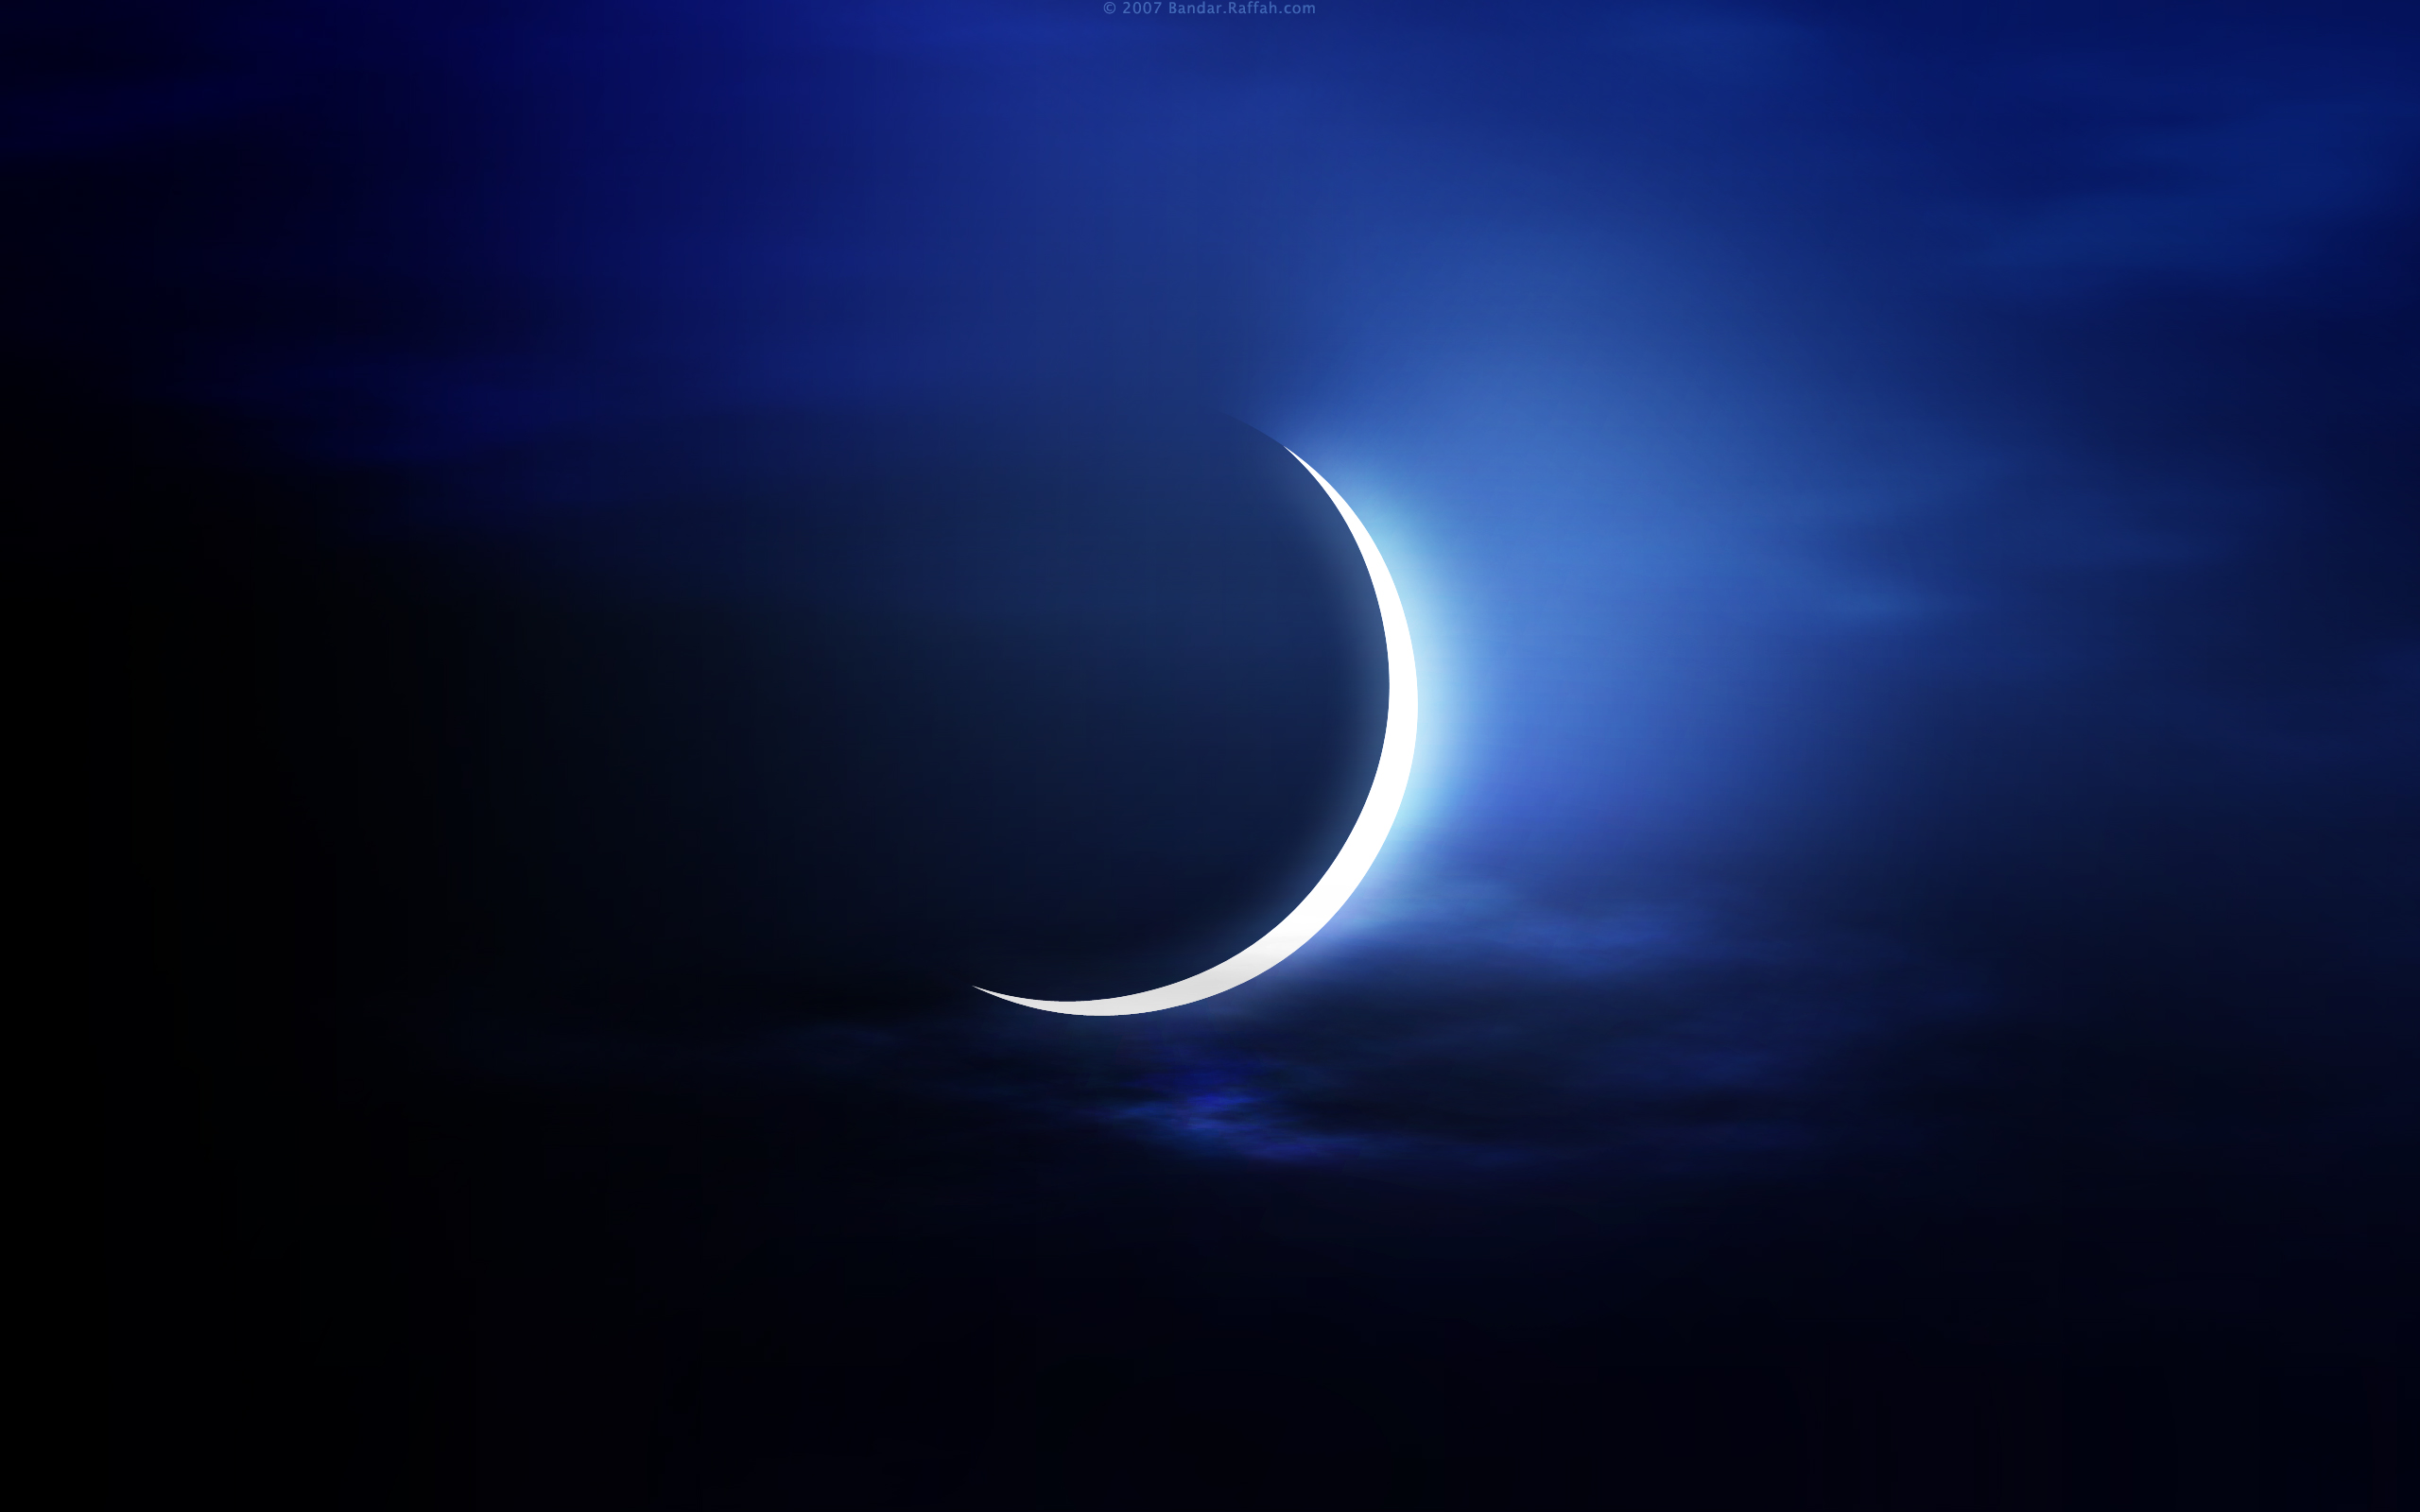 الجمعية الفلكية بجدة: الليلة هلال القمر يقترن بكوكب الزهرة